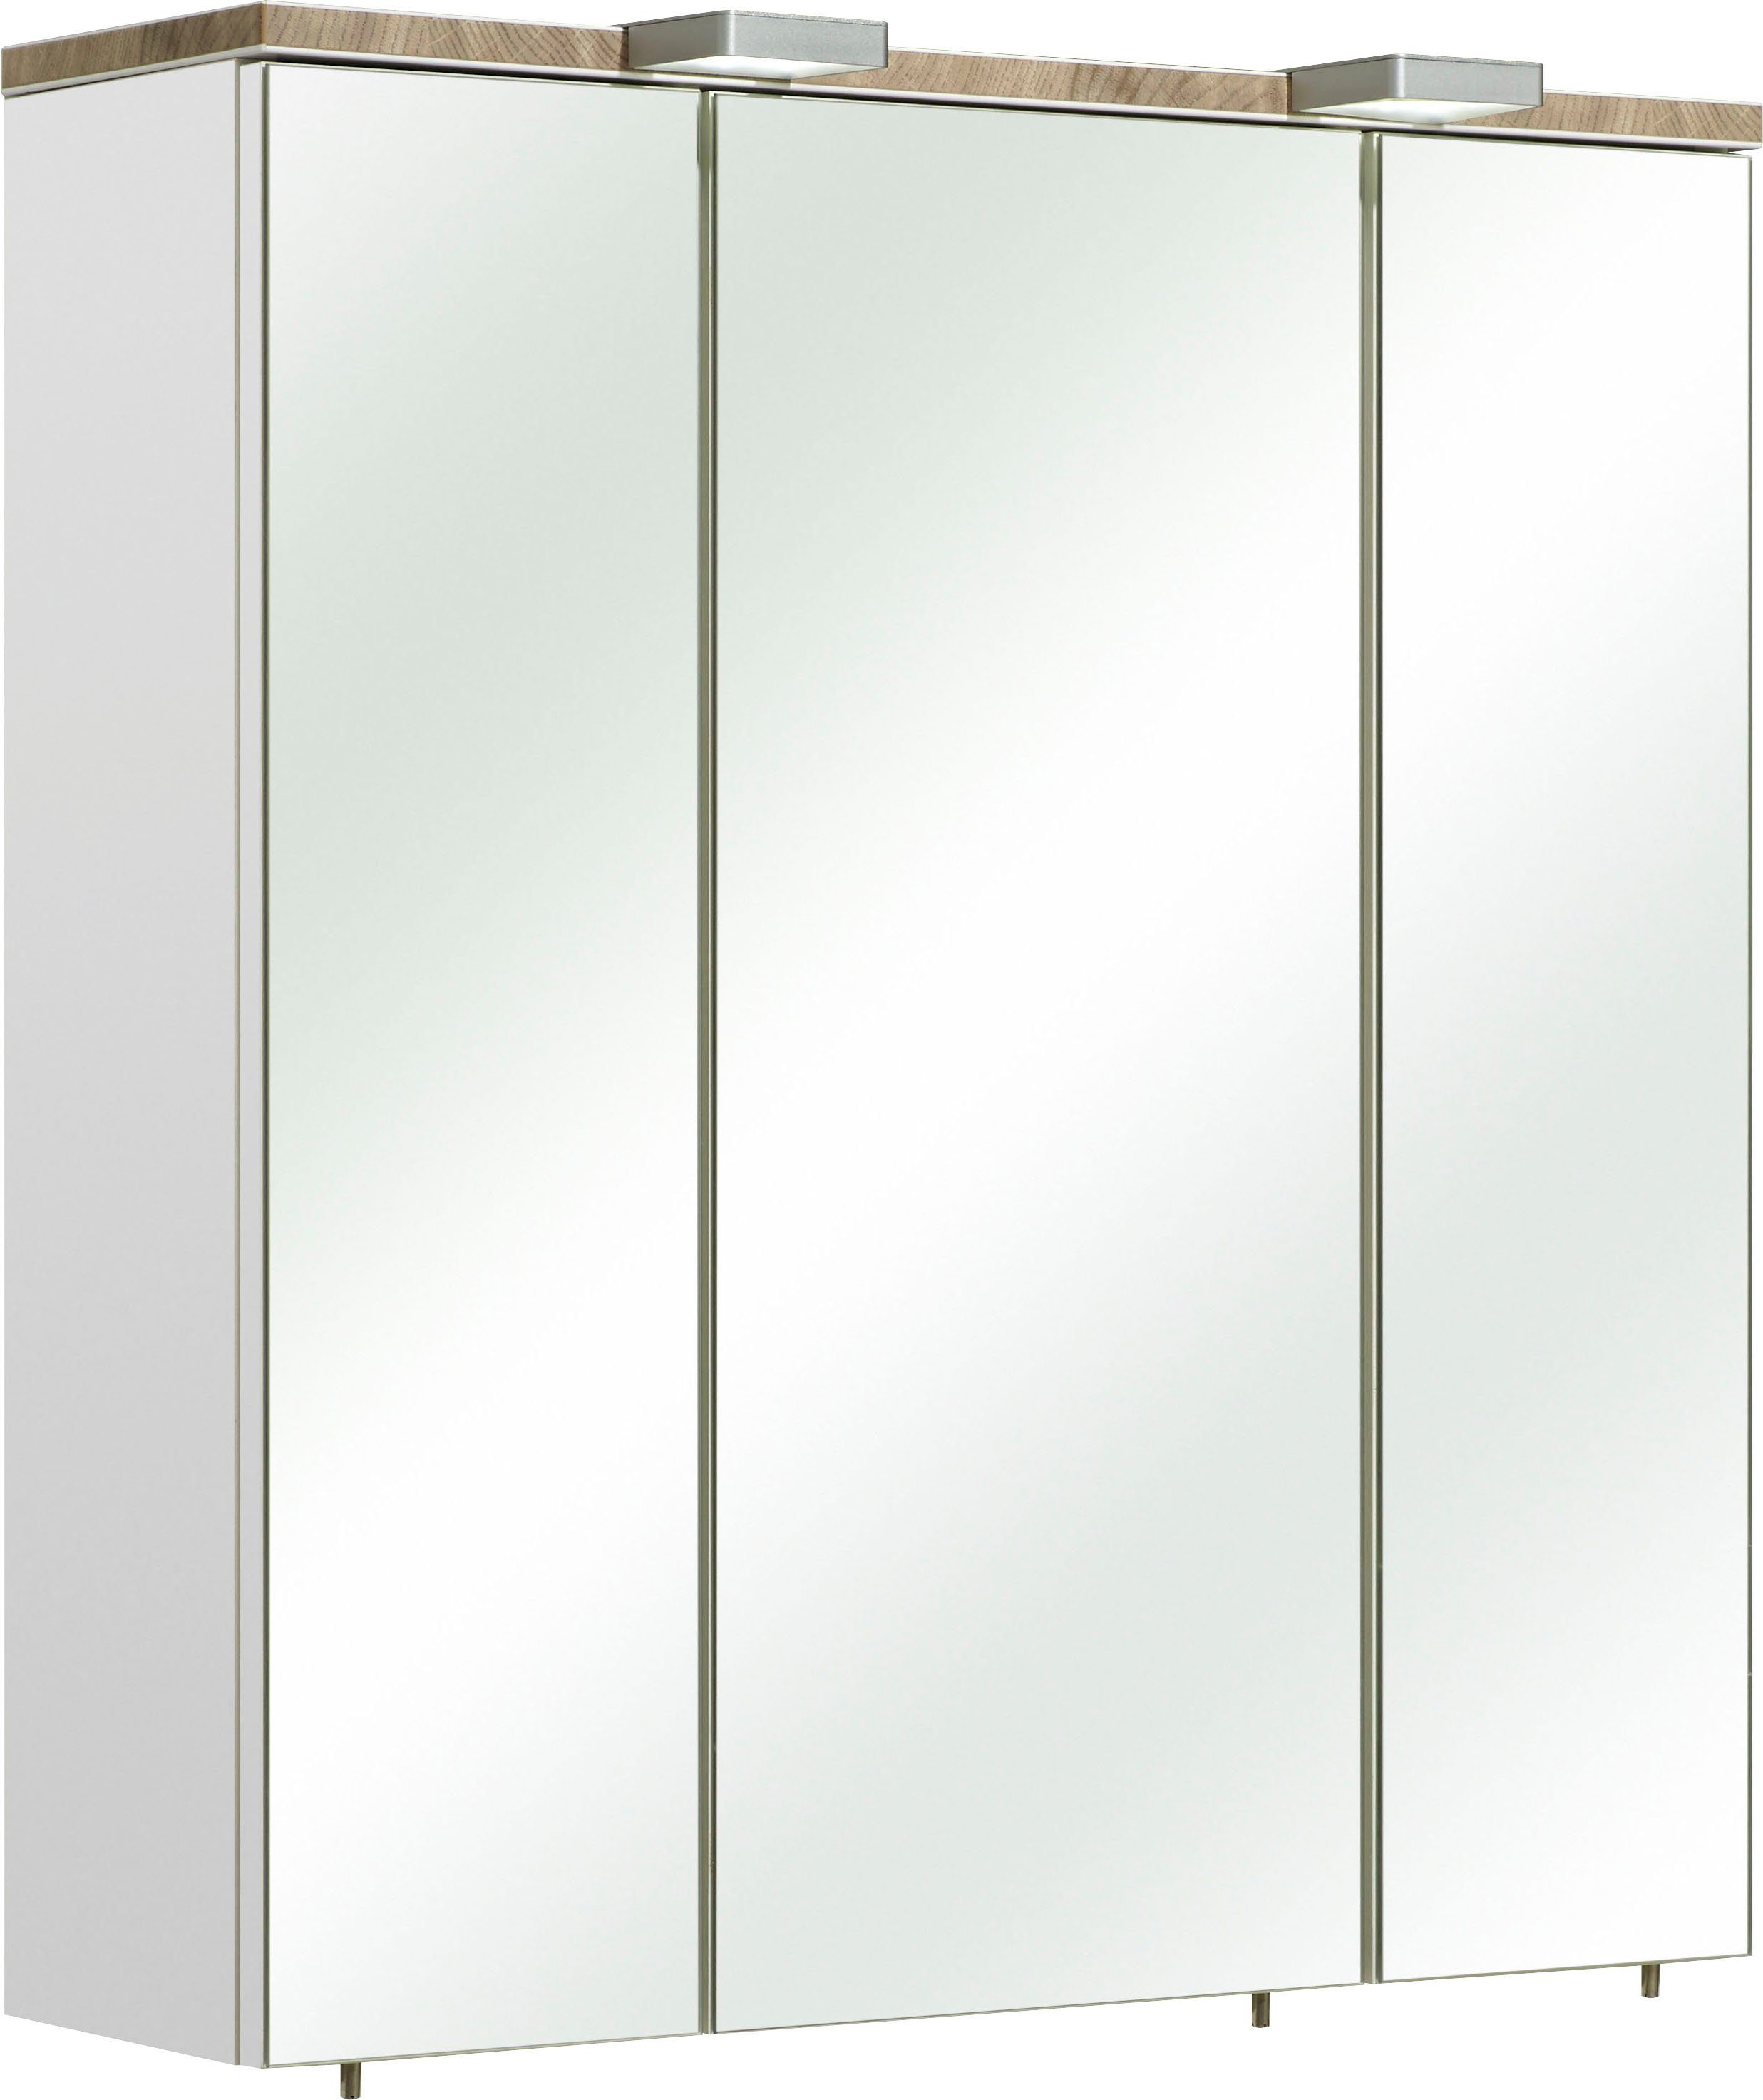 PELIPAL Spiegelschrank Quickset 931, 65/20/70 cm | Spiegelschränke